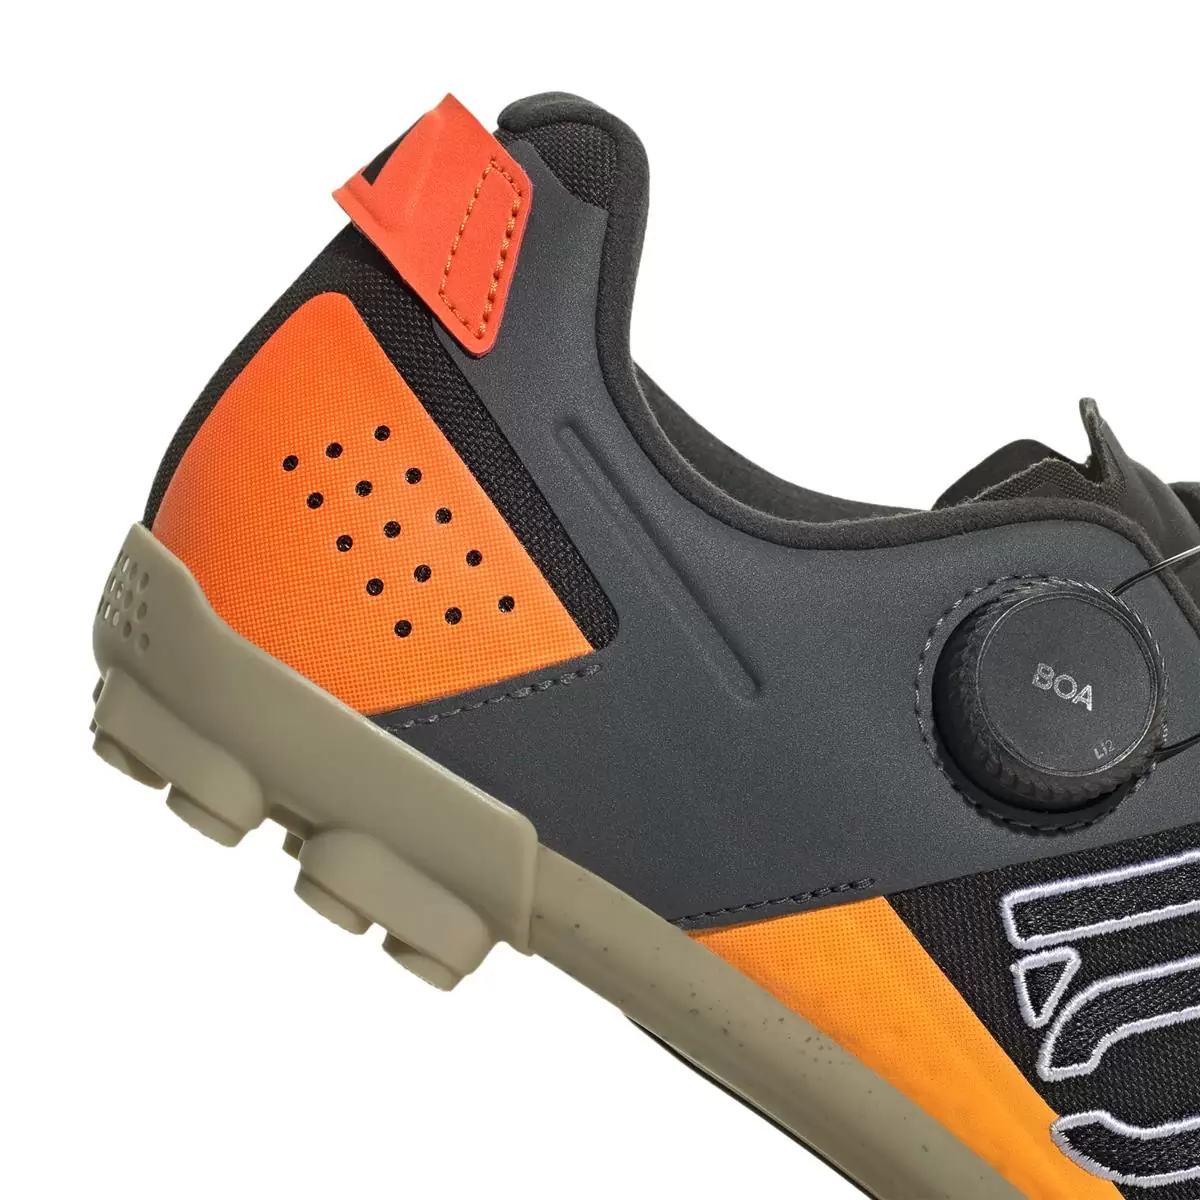 Clip 5.10 Kestrel Boa MTB Shoes Black/Orange Size 41.5 #7